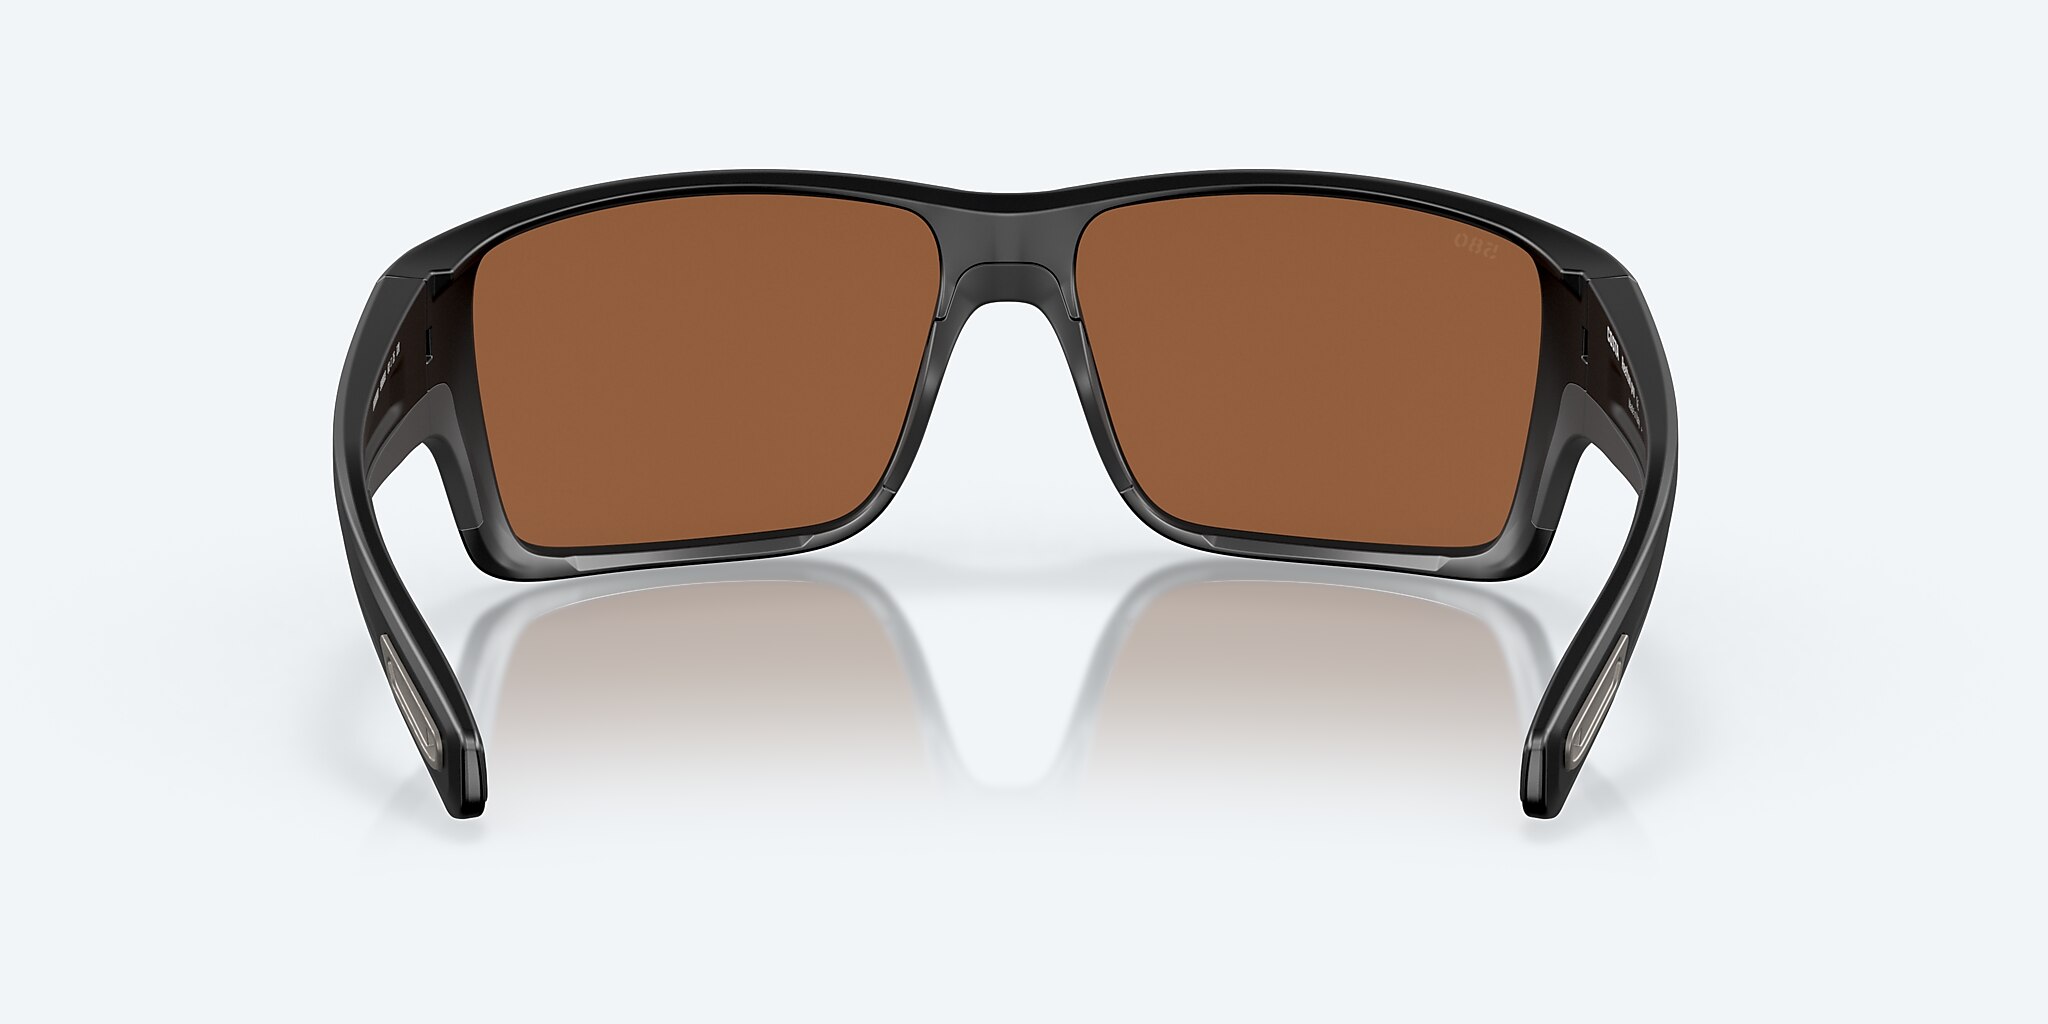 Reefton PRO Polarized Sunglasses in Mar® Copper Del Mirror Silver | Costa